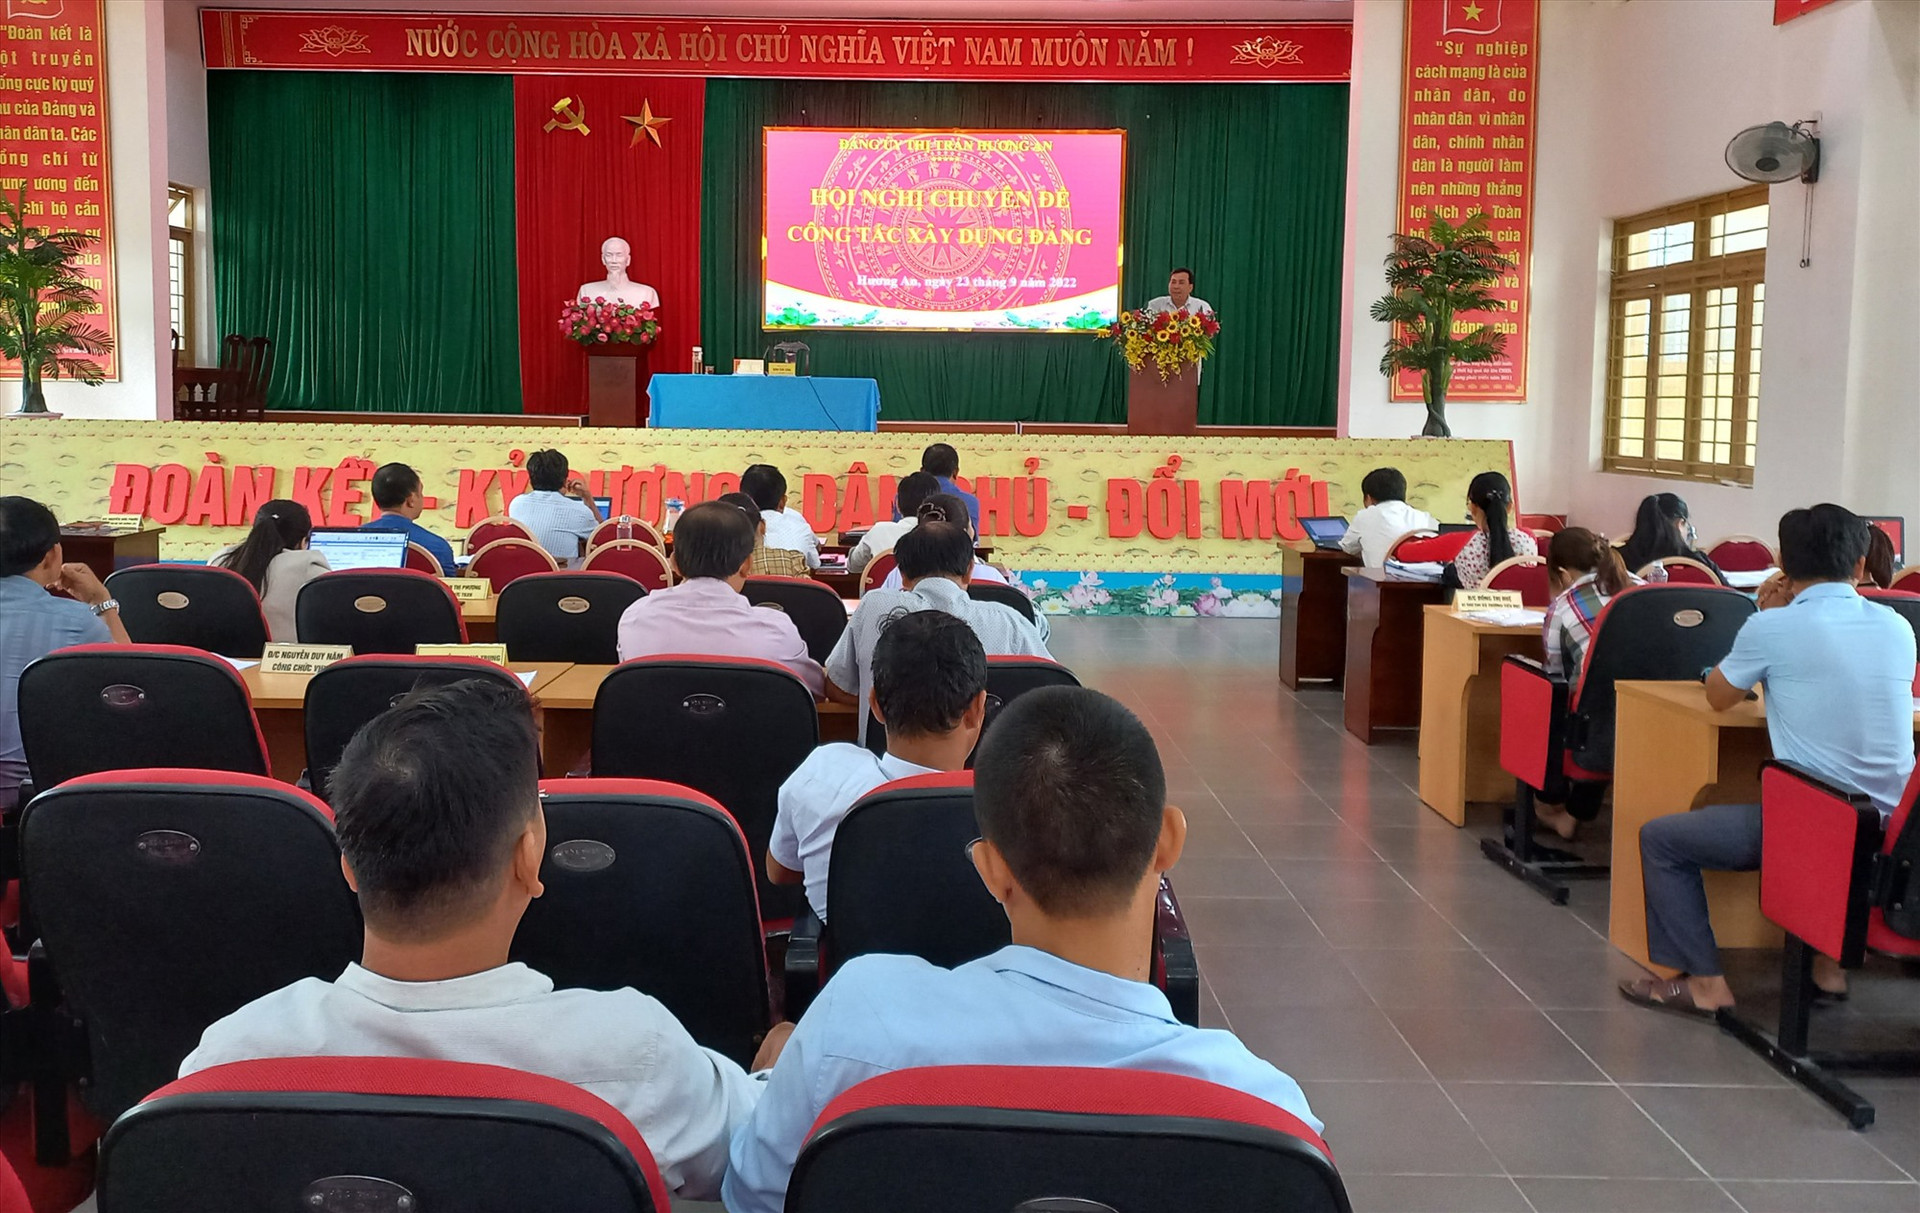 Đảng ủy thị trấn Hương An hội nghị chuyên đề công tác xây dựng Đảng. Ảnh: DUY THÁI